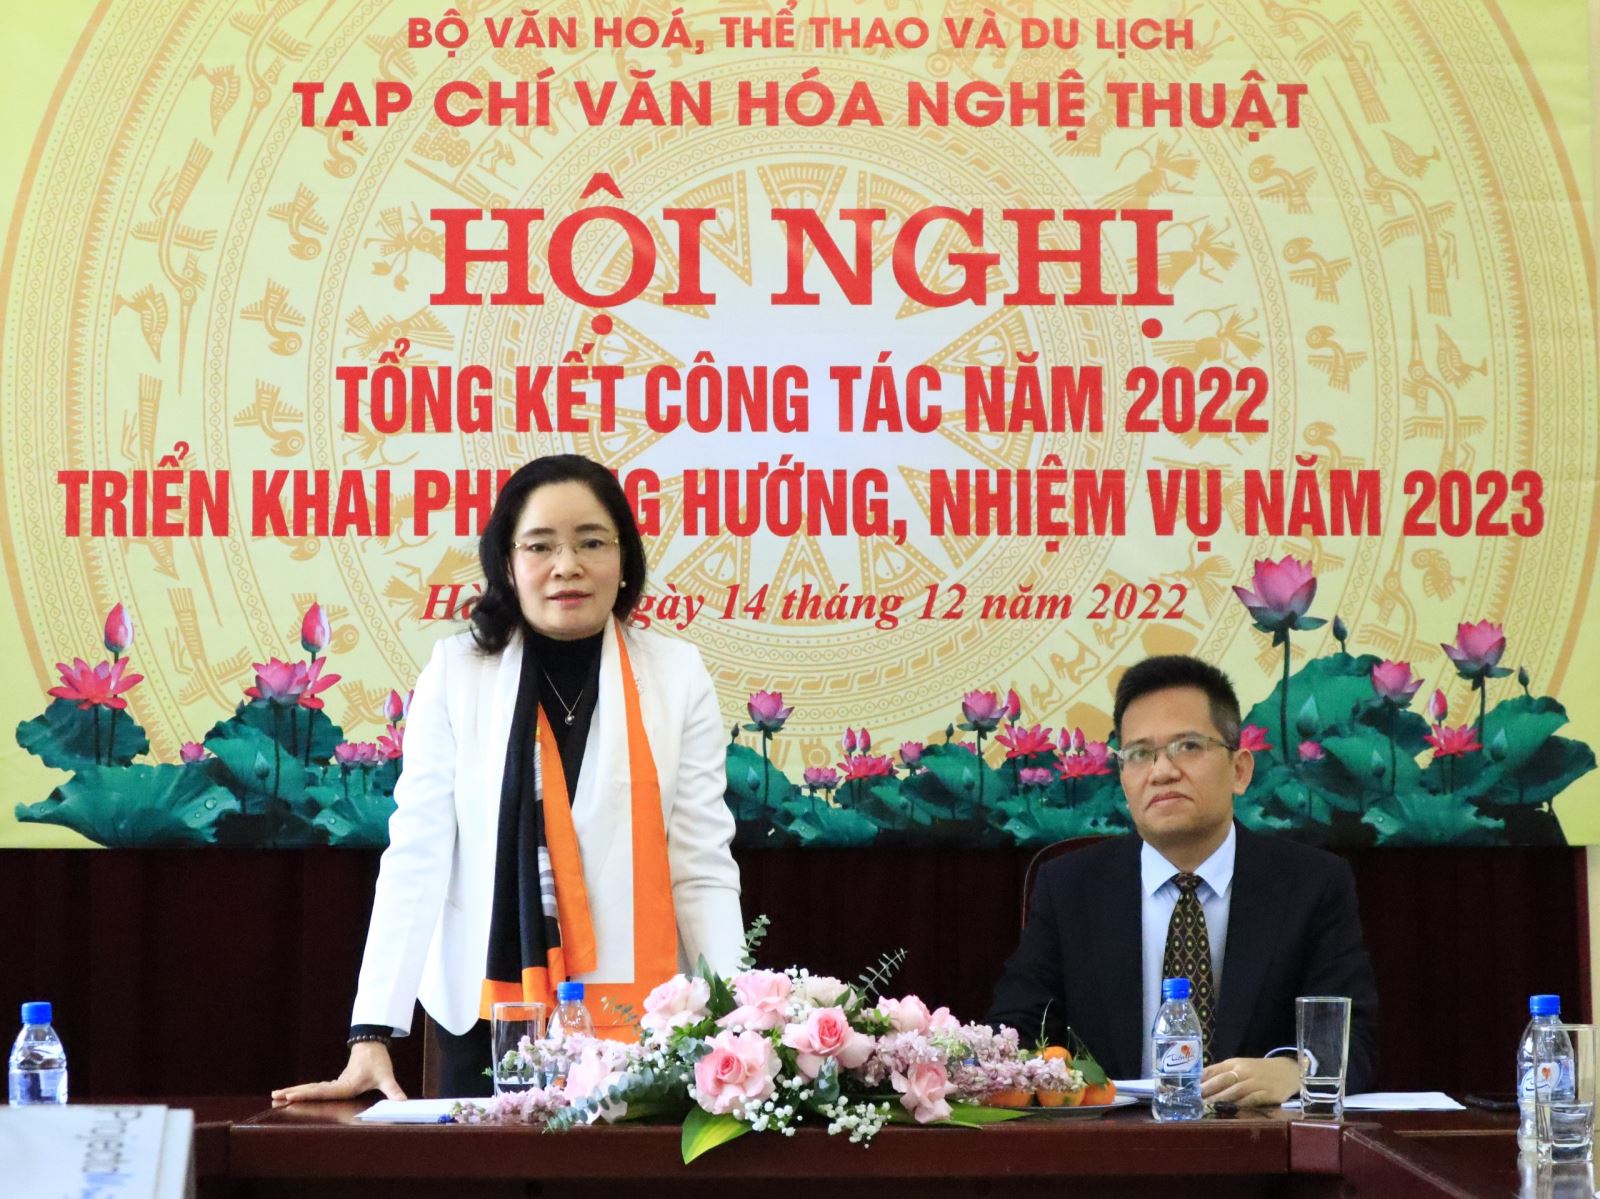 Thứ trưởng Trịnh Thị Thủy: Năm 2022, Tạp chí Văn hóa Nghệ thuật đã chủ động, sáng tạo, đề xuất các nhiệm vụ thiết thực